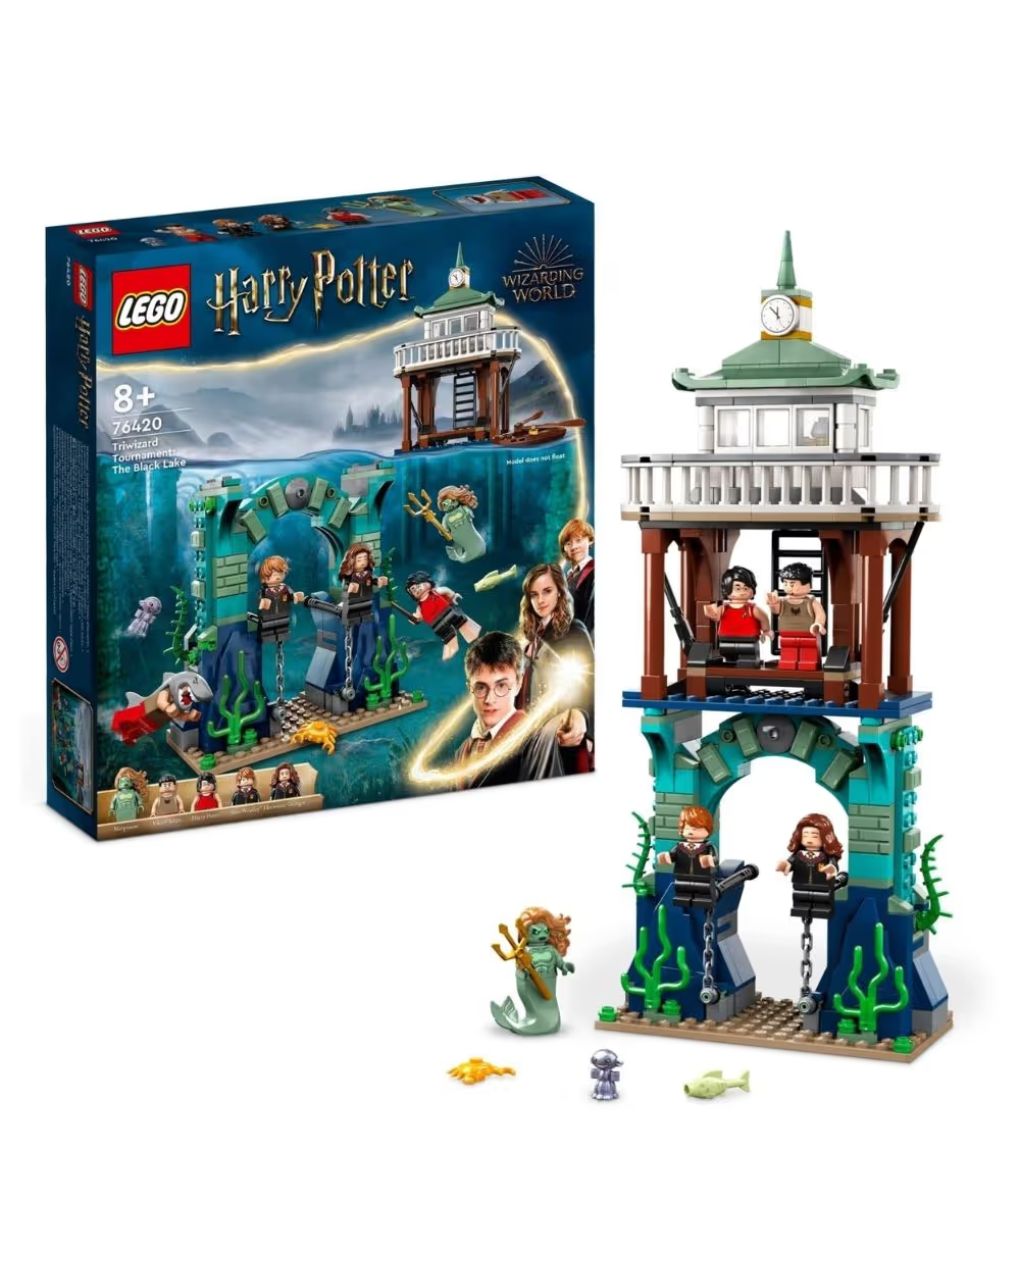 Lego harry potter τρίαθλο μαγείας: η μαύρη λίμνη 76420